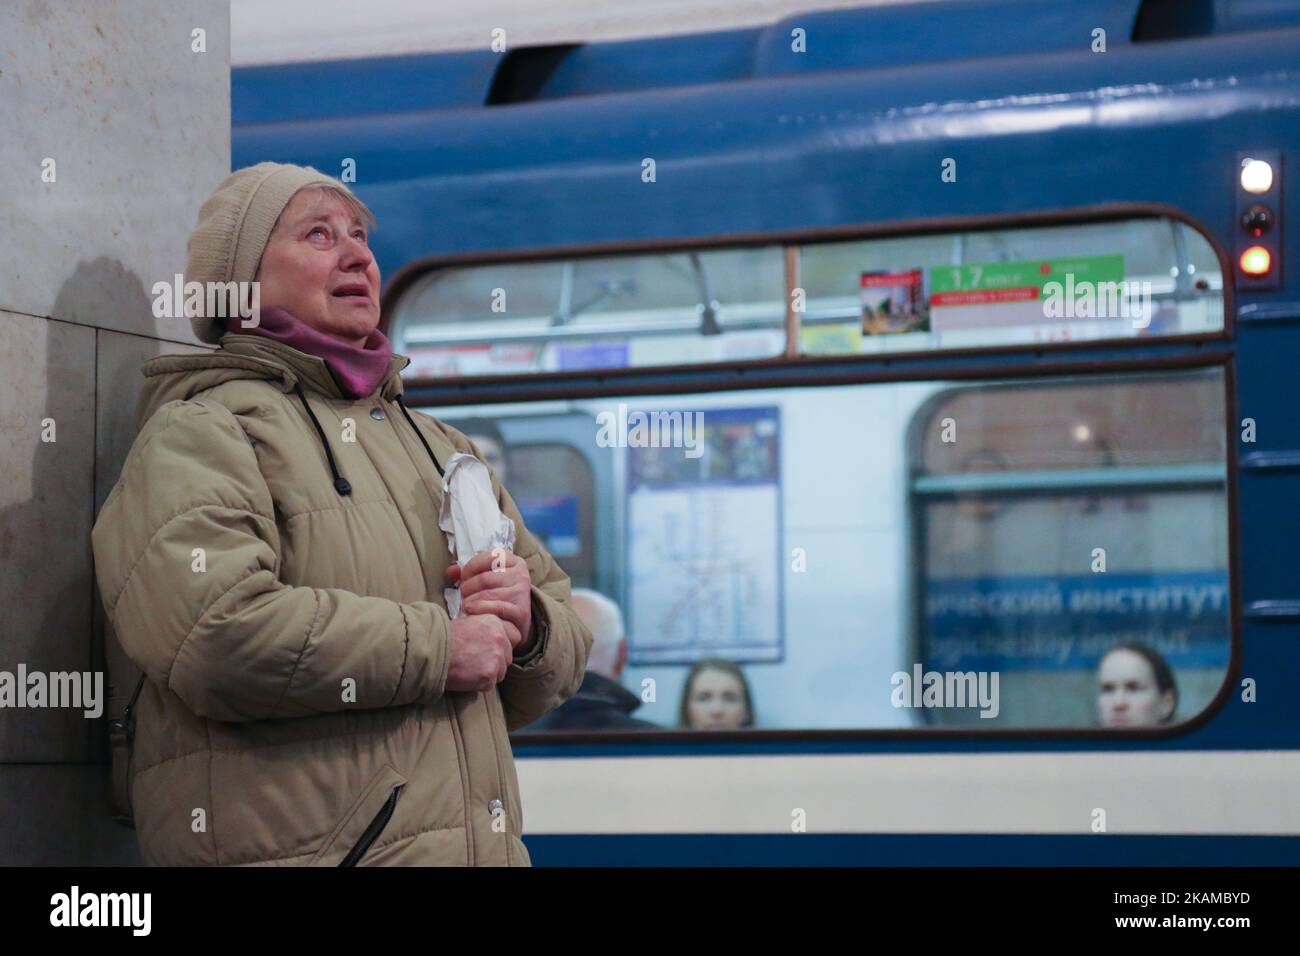 Una donna reagisce mettendo fiori in onore delle vittime dello scoppio del 3 aprile sulla piattaforma della stazione della metropolitana dell'Istituto tecnologico a San Pietroburgo il 4 aprile 2017. . La polizia russa continua le indagini dopo che 14 persone sono state uccise e decine di feriti a San Pietroburgo a seguito di esplosioni tra due stazioni della metropolitana della città. Secondo quanto riferito, il sospetto è un nativo del Kirghizistan, chiamato Akbarzhon Jalilov, che ha ottenuto la cittadinanza russa, secondo il servizio di sicurezza del paese dell'Asia centrale. Le autorità di San Pietroburgo hanno dichiarato tre giorni di lutto. (Foto di Ig Foto Stock